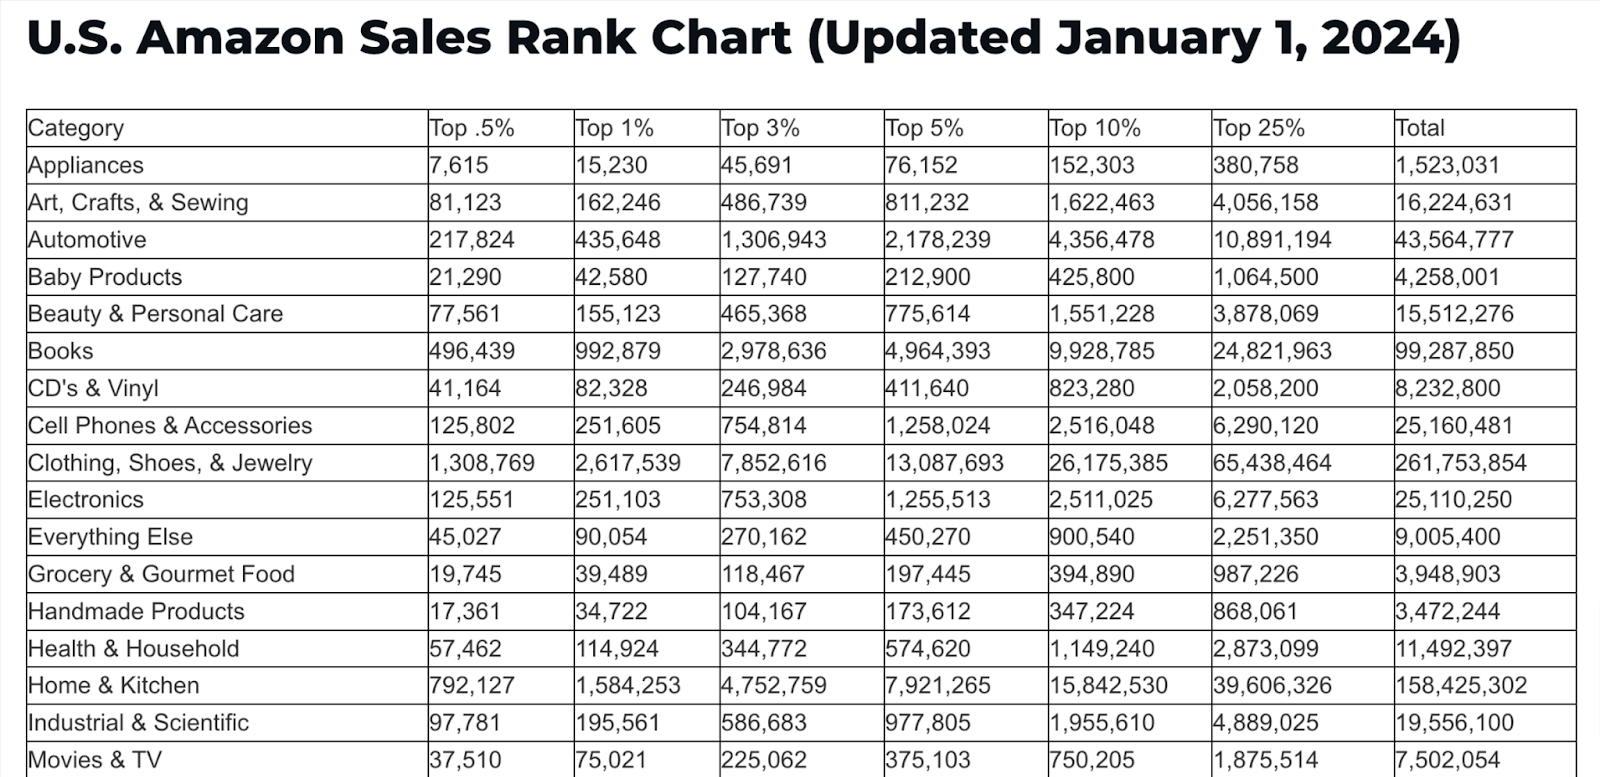 U.S. Amazon Sales Rank Chart